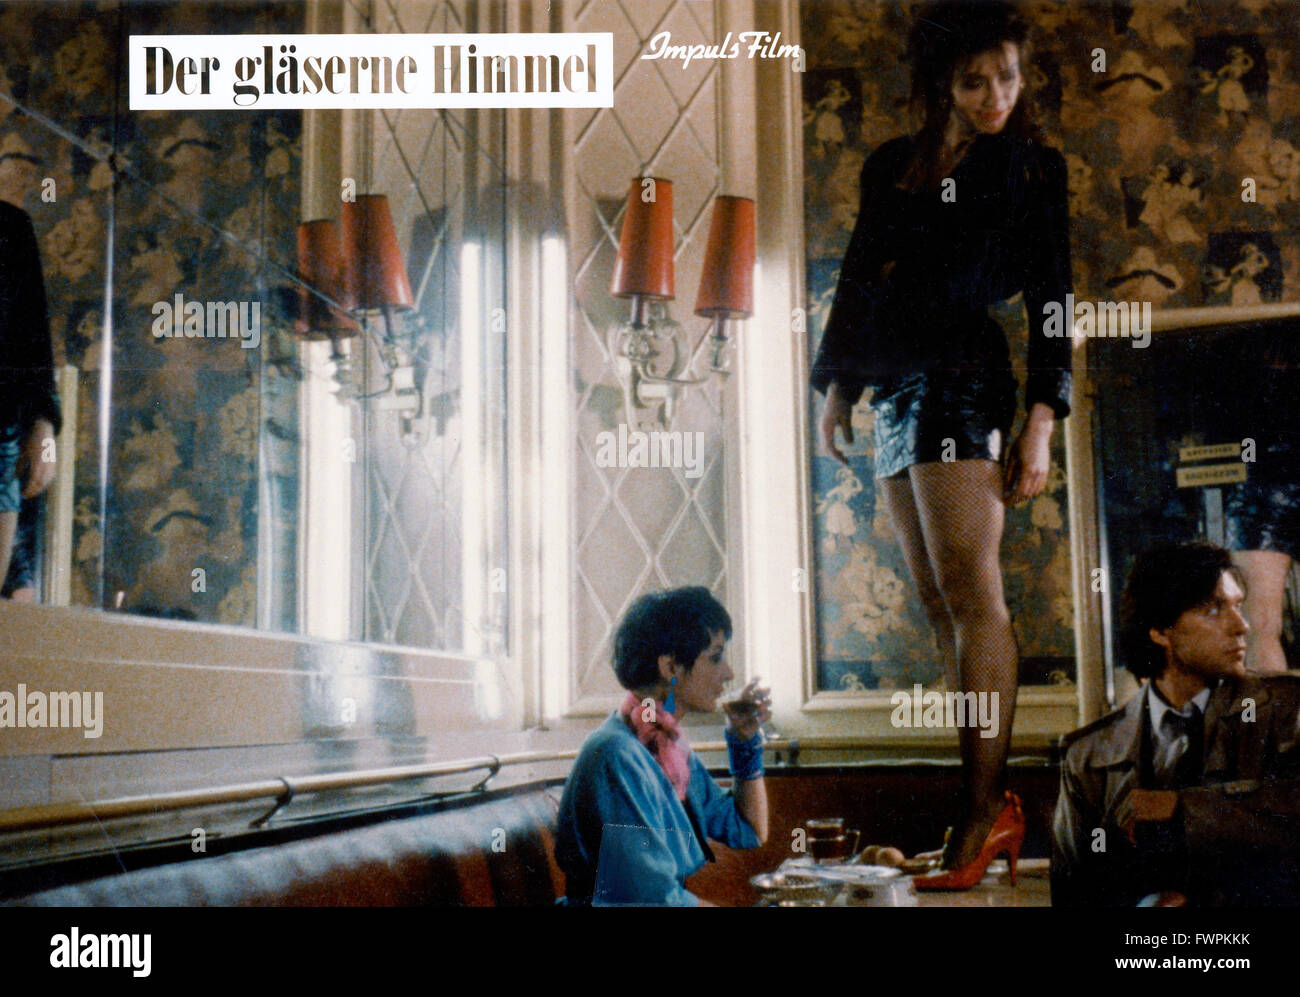 Der gläserne Himmel, Deutschland 1987, Regie: Nina Grosse, Szenenfoto Stock Photo